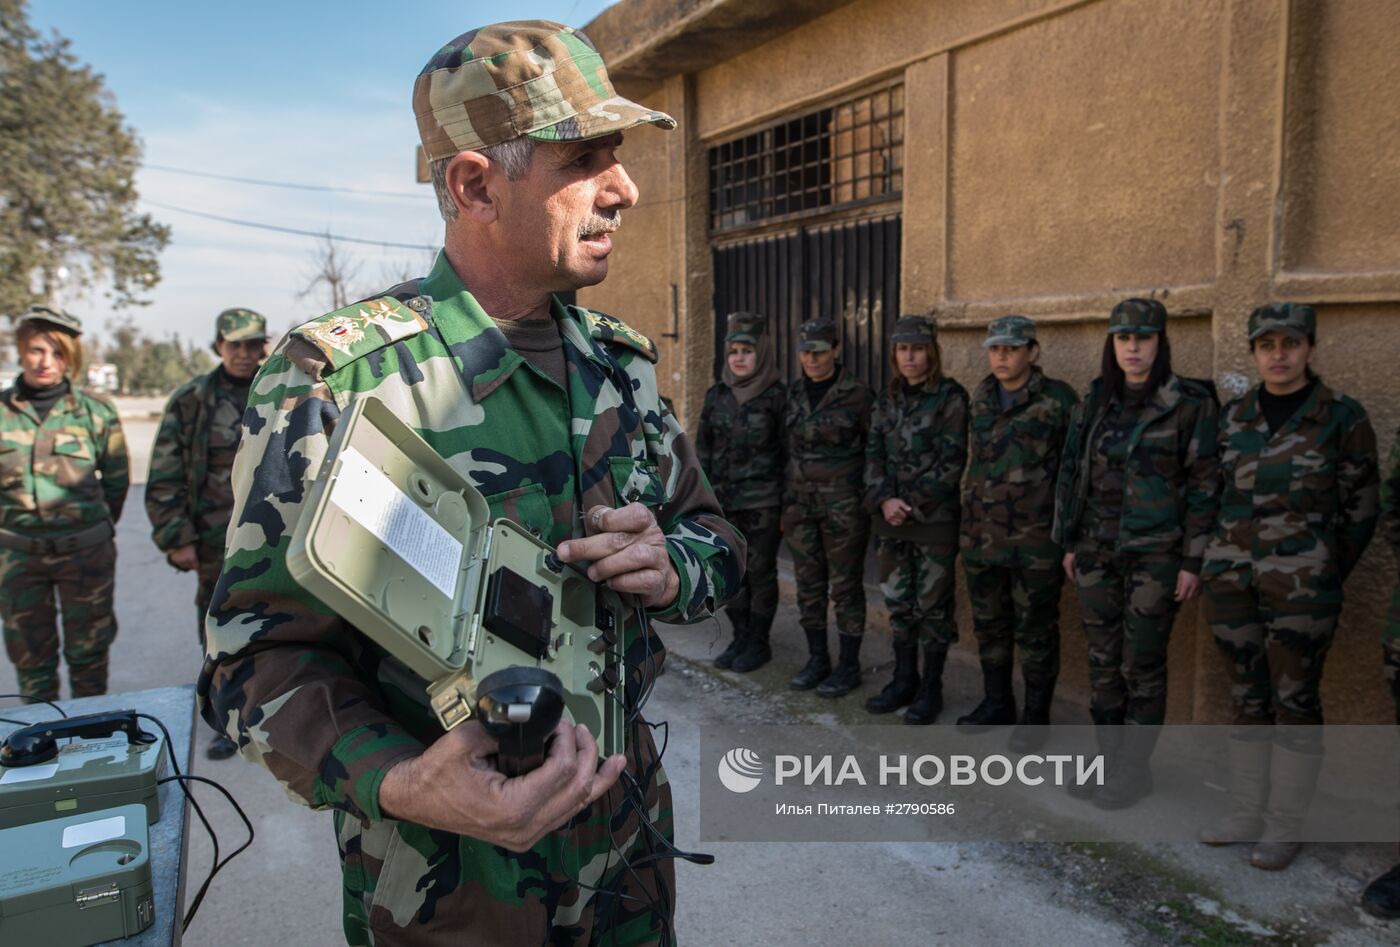 Обучение добровольцев сирийской армии в пригороде Дамаска